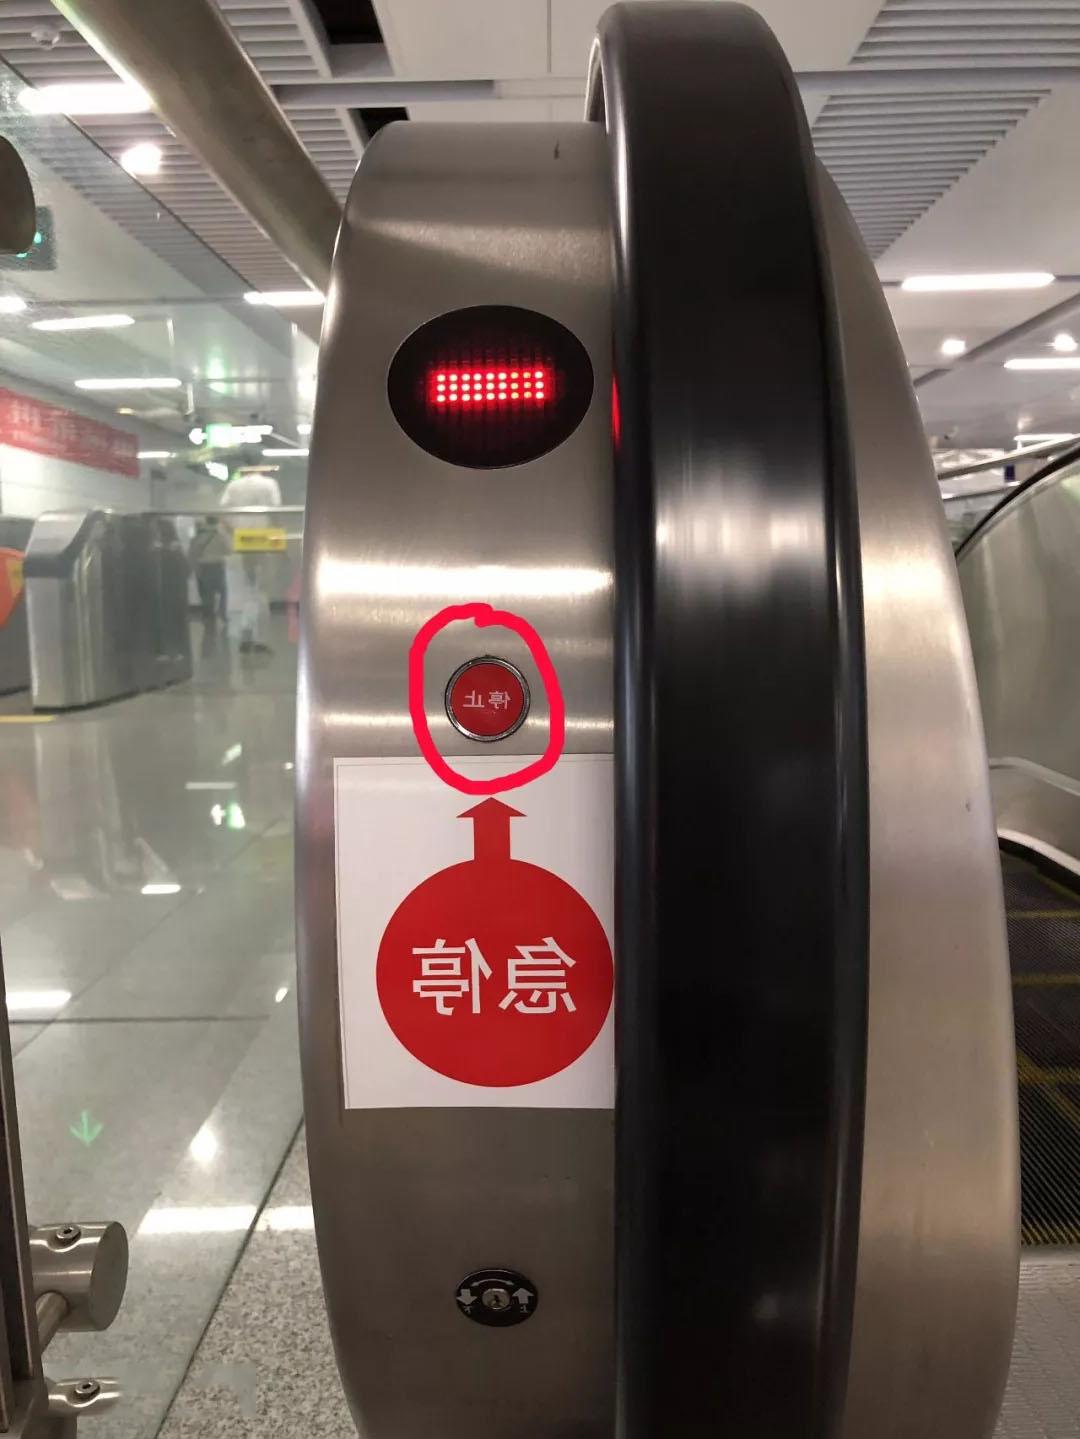 湖南电梯公司:自动扶急停按钮